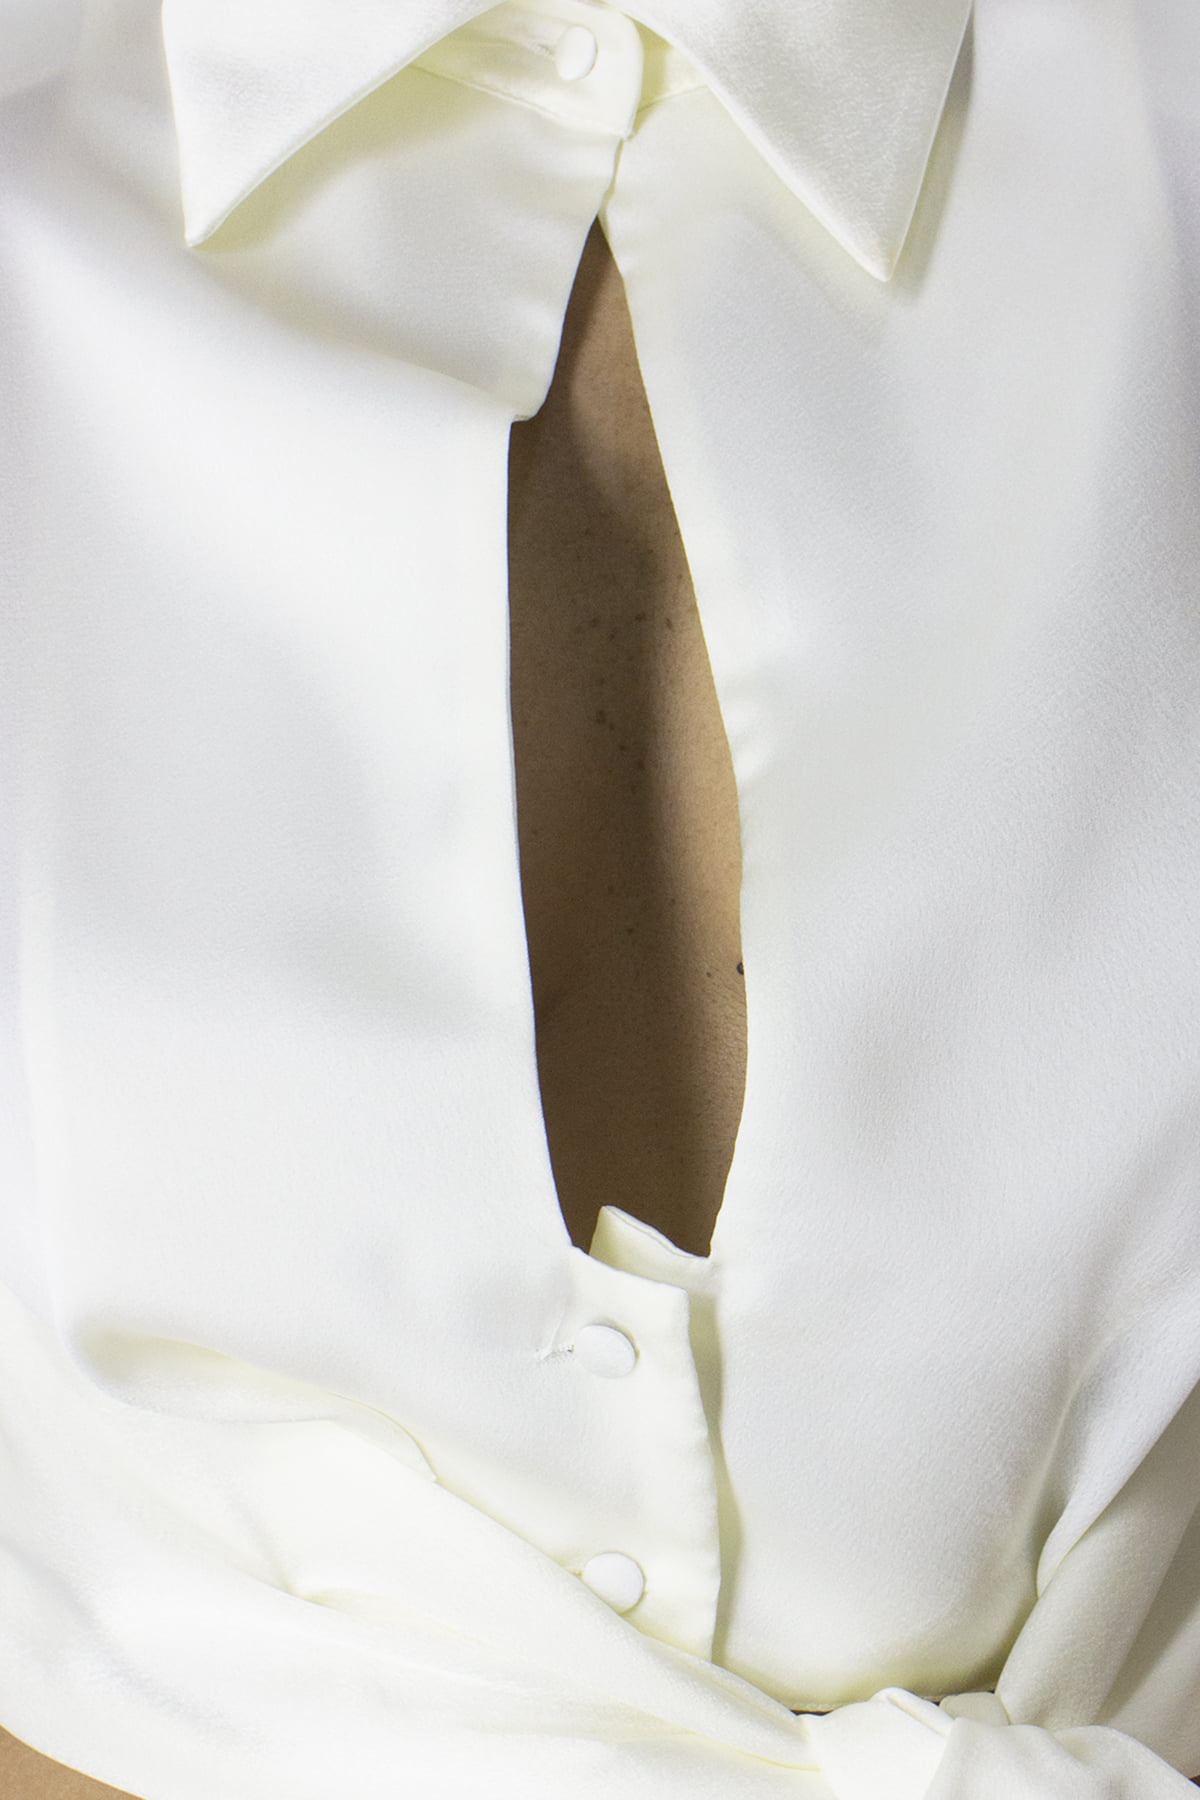 Camicia donna corta con scollo profondo colletto alto chiusura bottoncini e chiusura nodo